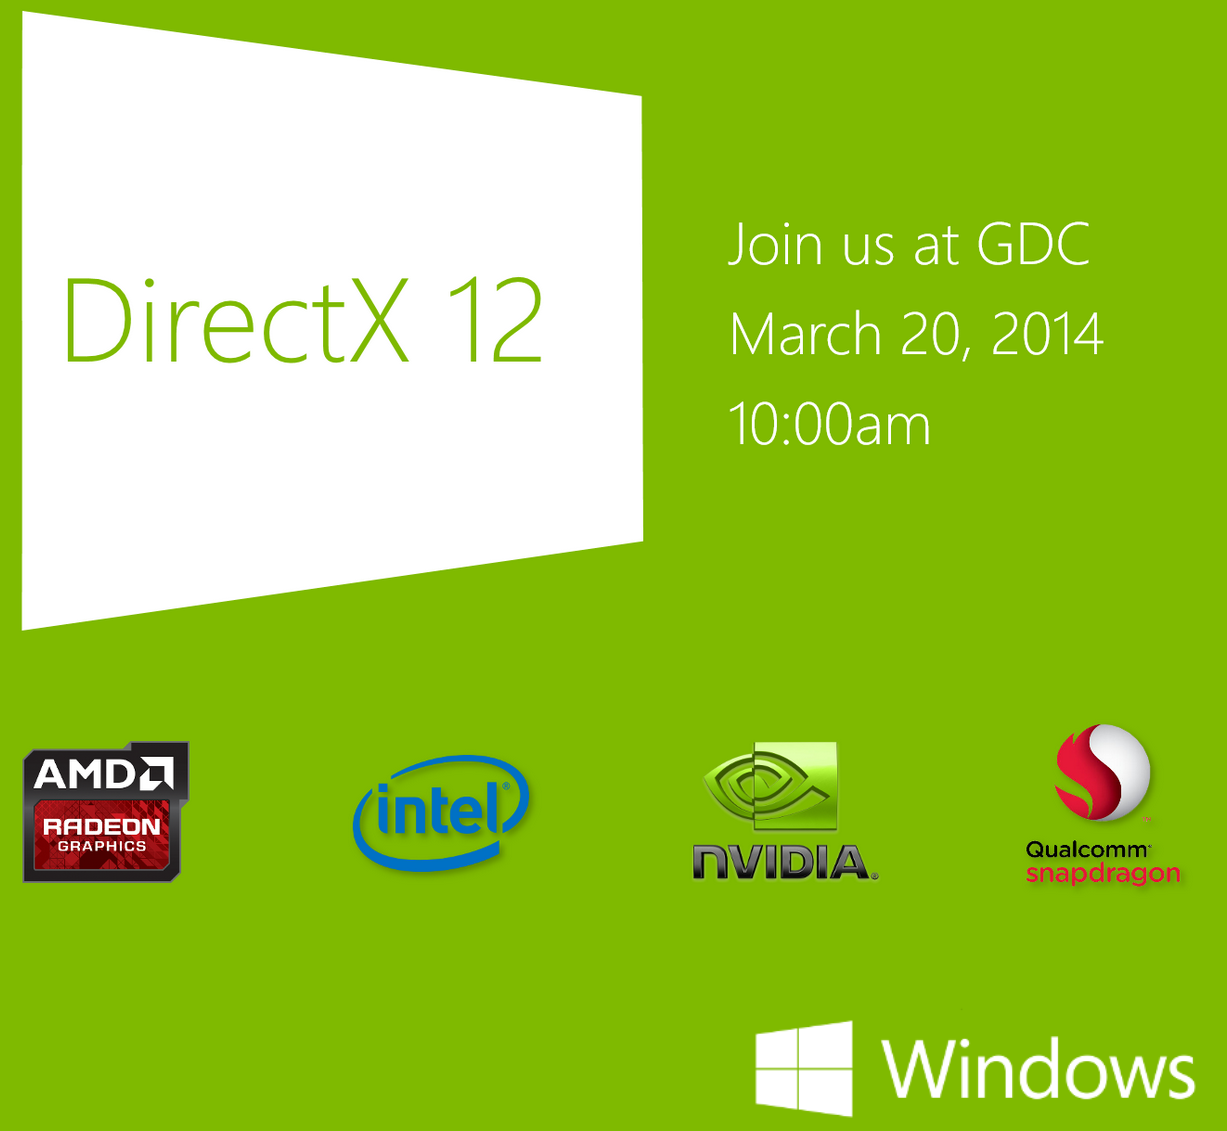  Nvidia GTX 800 Ekran Kartları DirectX 12 Desteklemeyecek